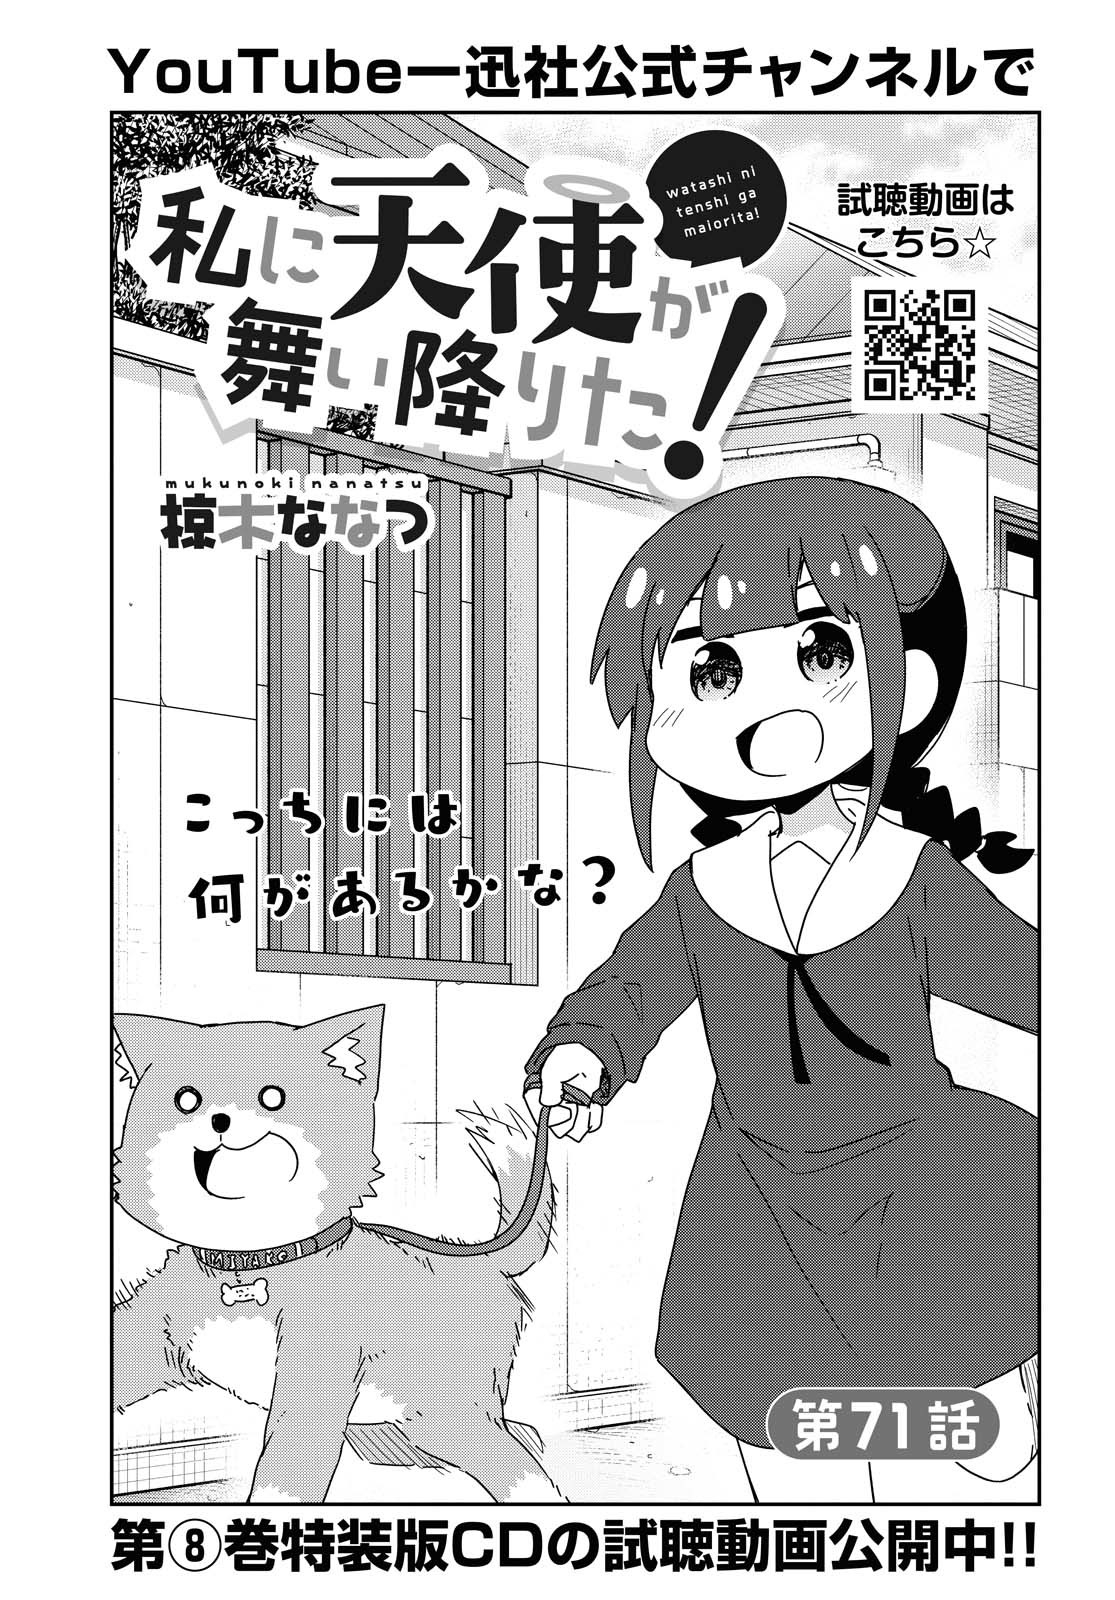 Watashi ni Tenshi ga Maiorita! - Chapter 71 - Page 1